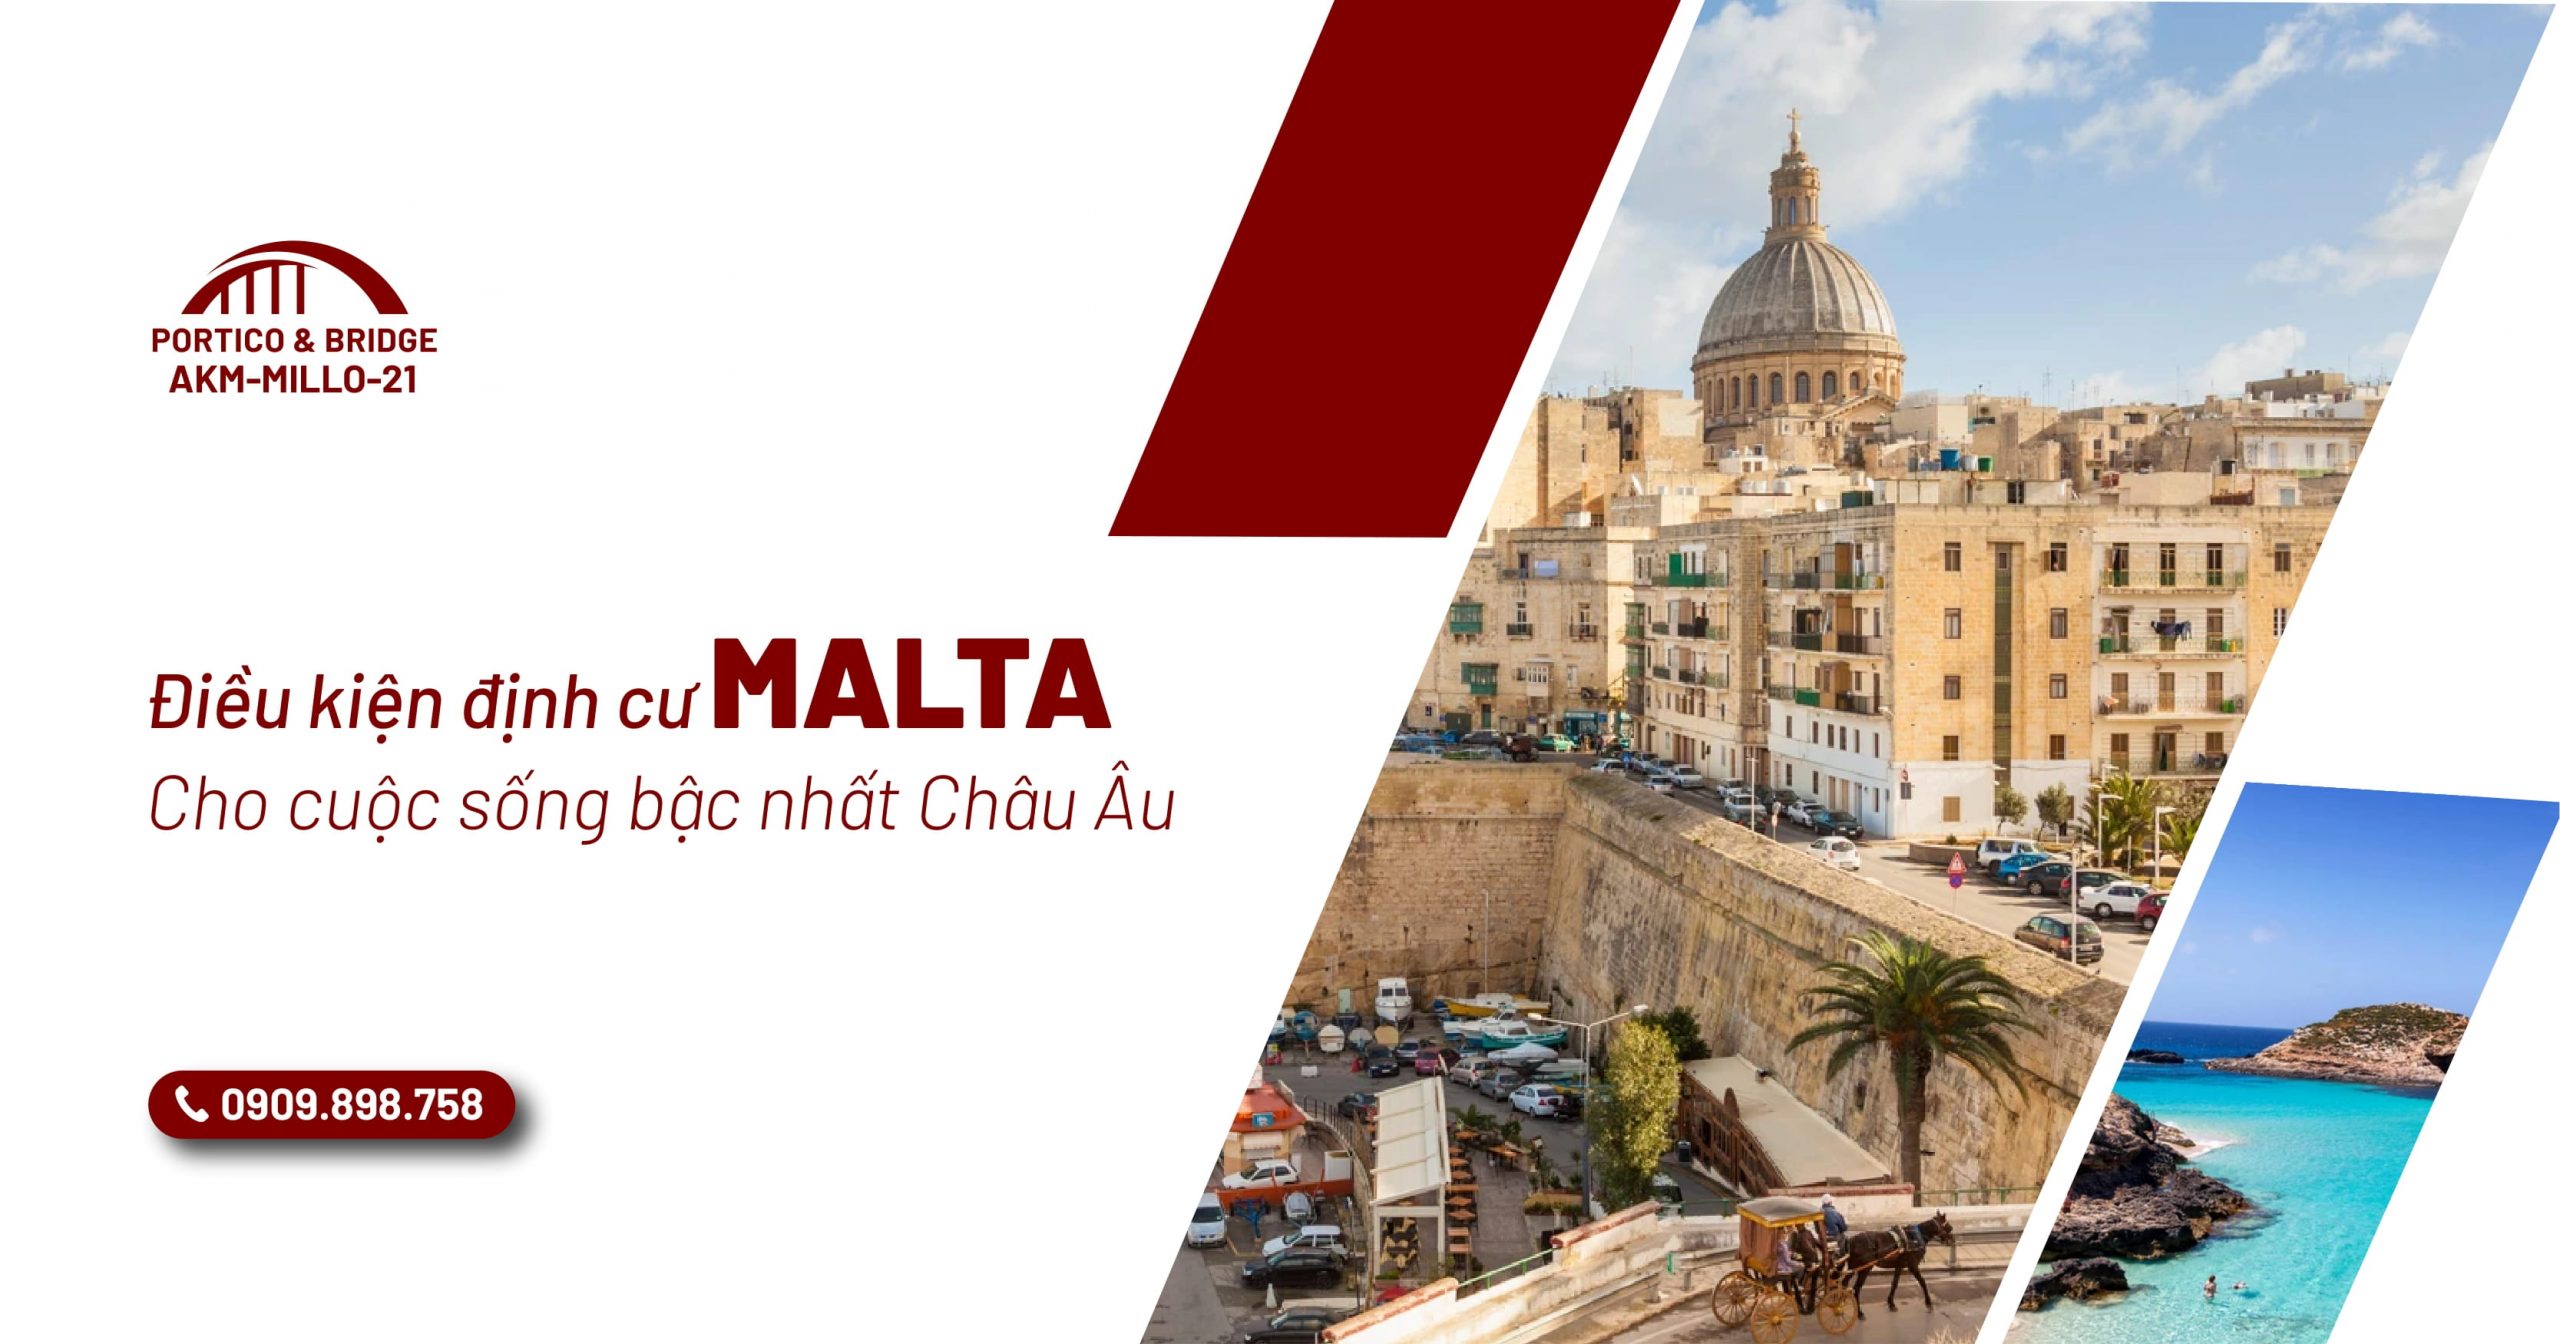 điều kiện định cư Malta